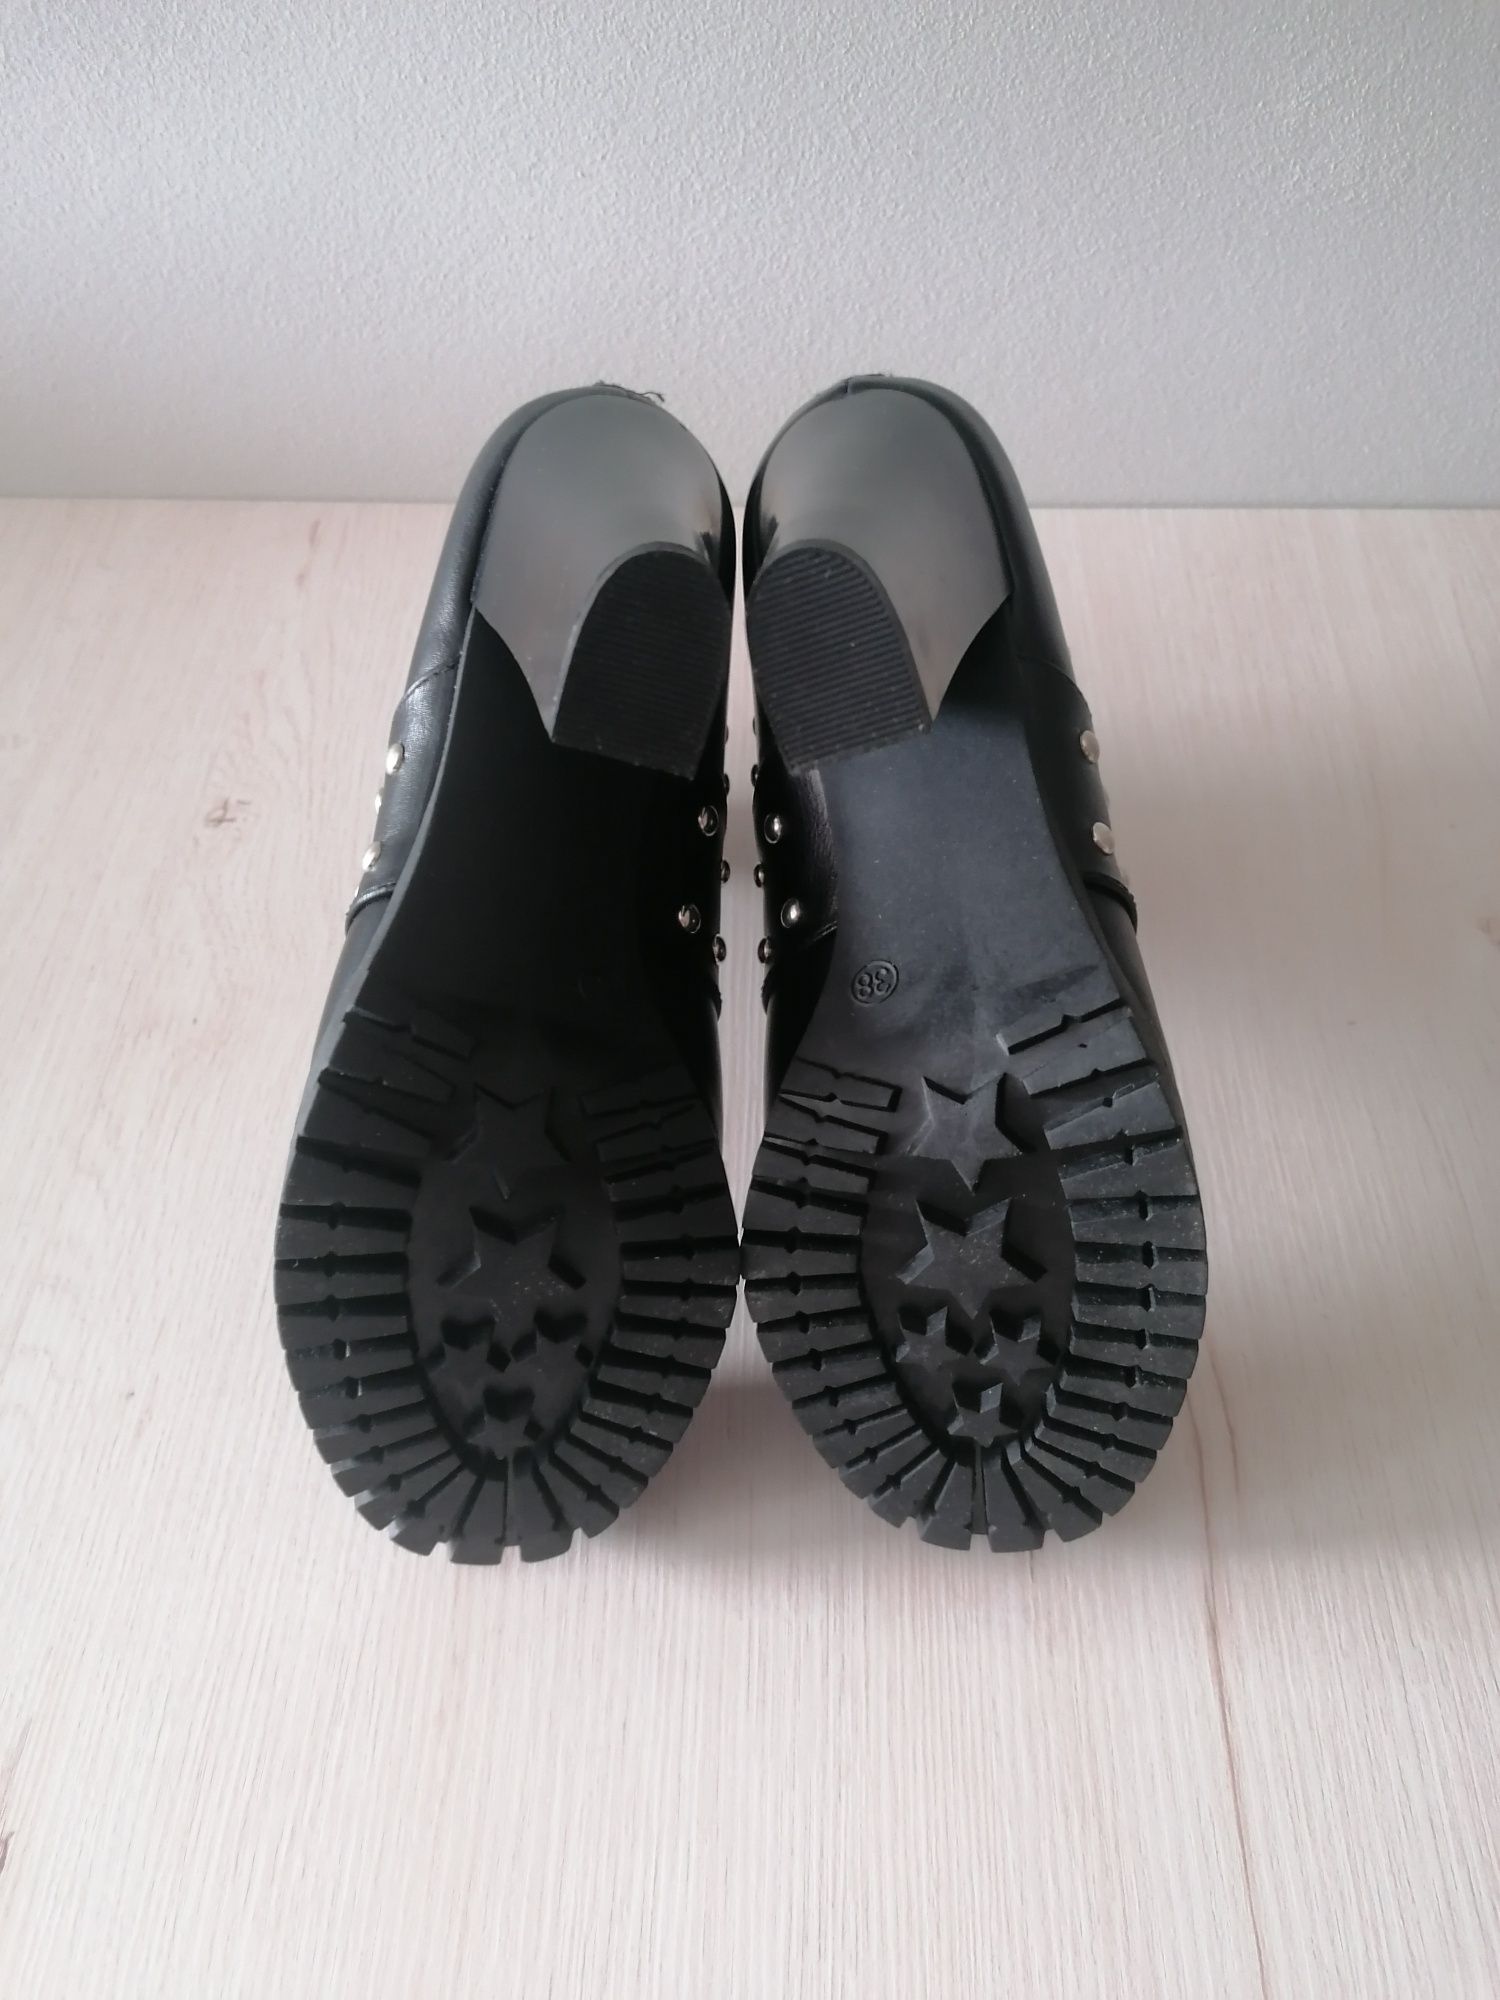 Nowa czarne z ćwiekami buty botki damskie na obcasie Catwalk r. 38!